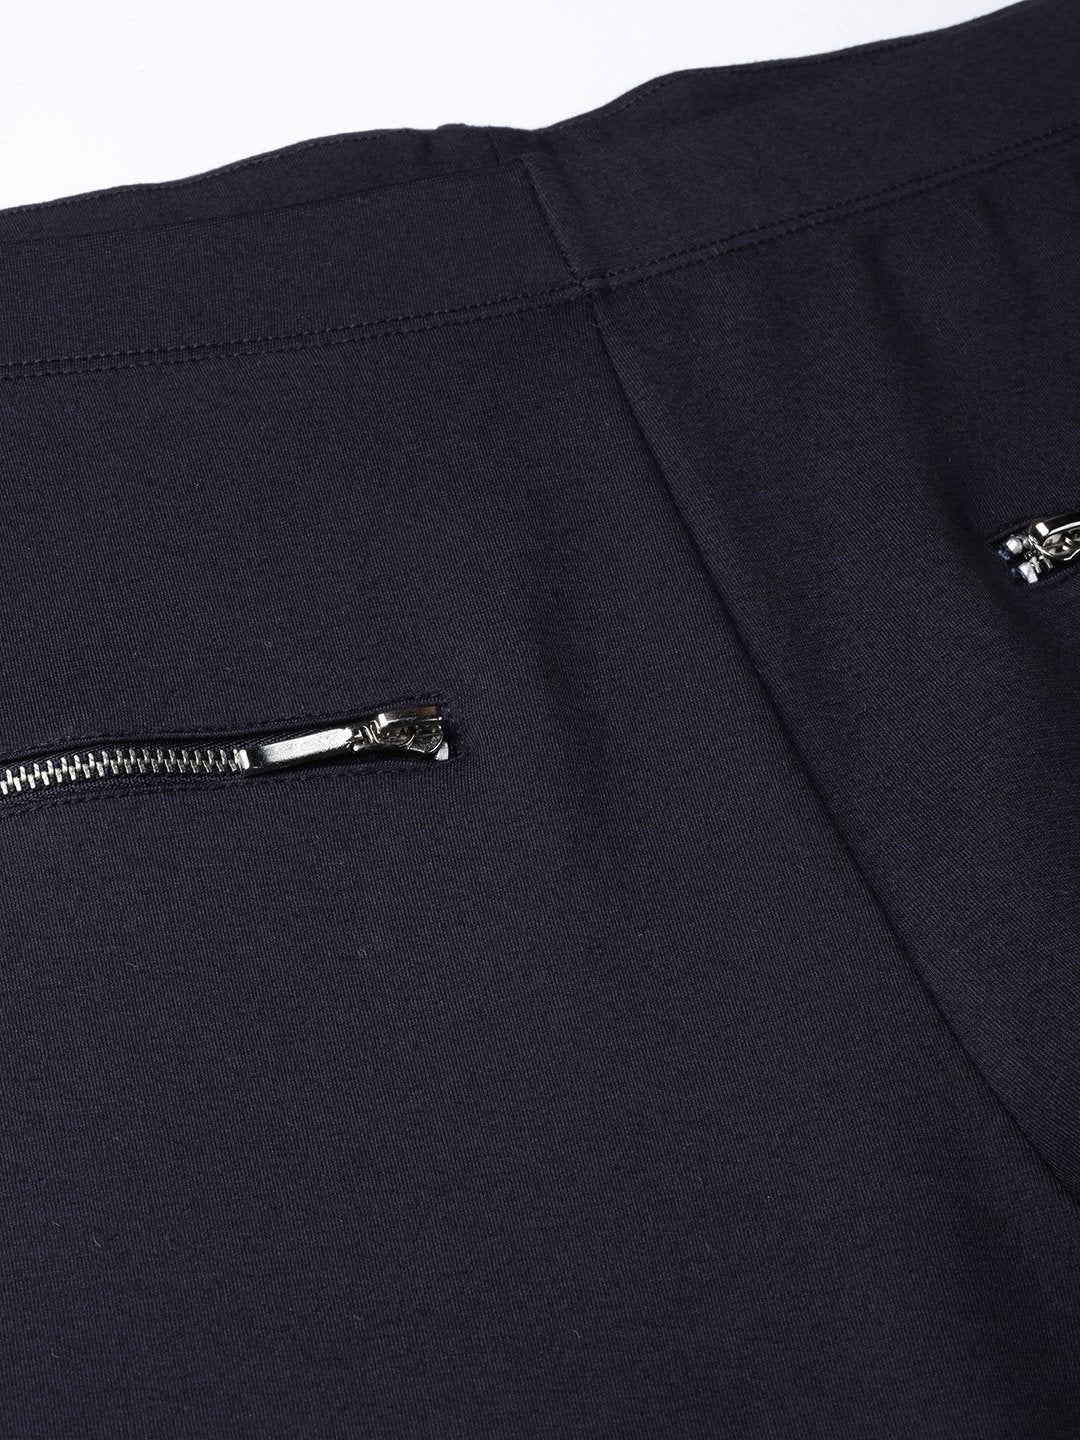 Buy Girls Black Pocket Zipper Jeggings Online at Sassafras